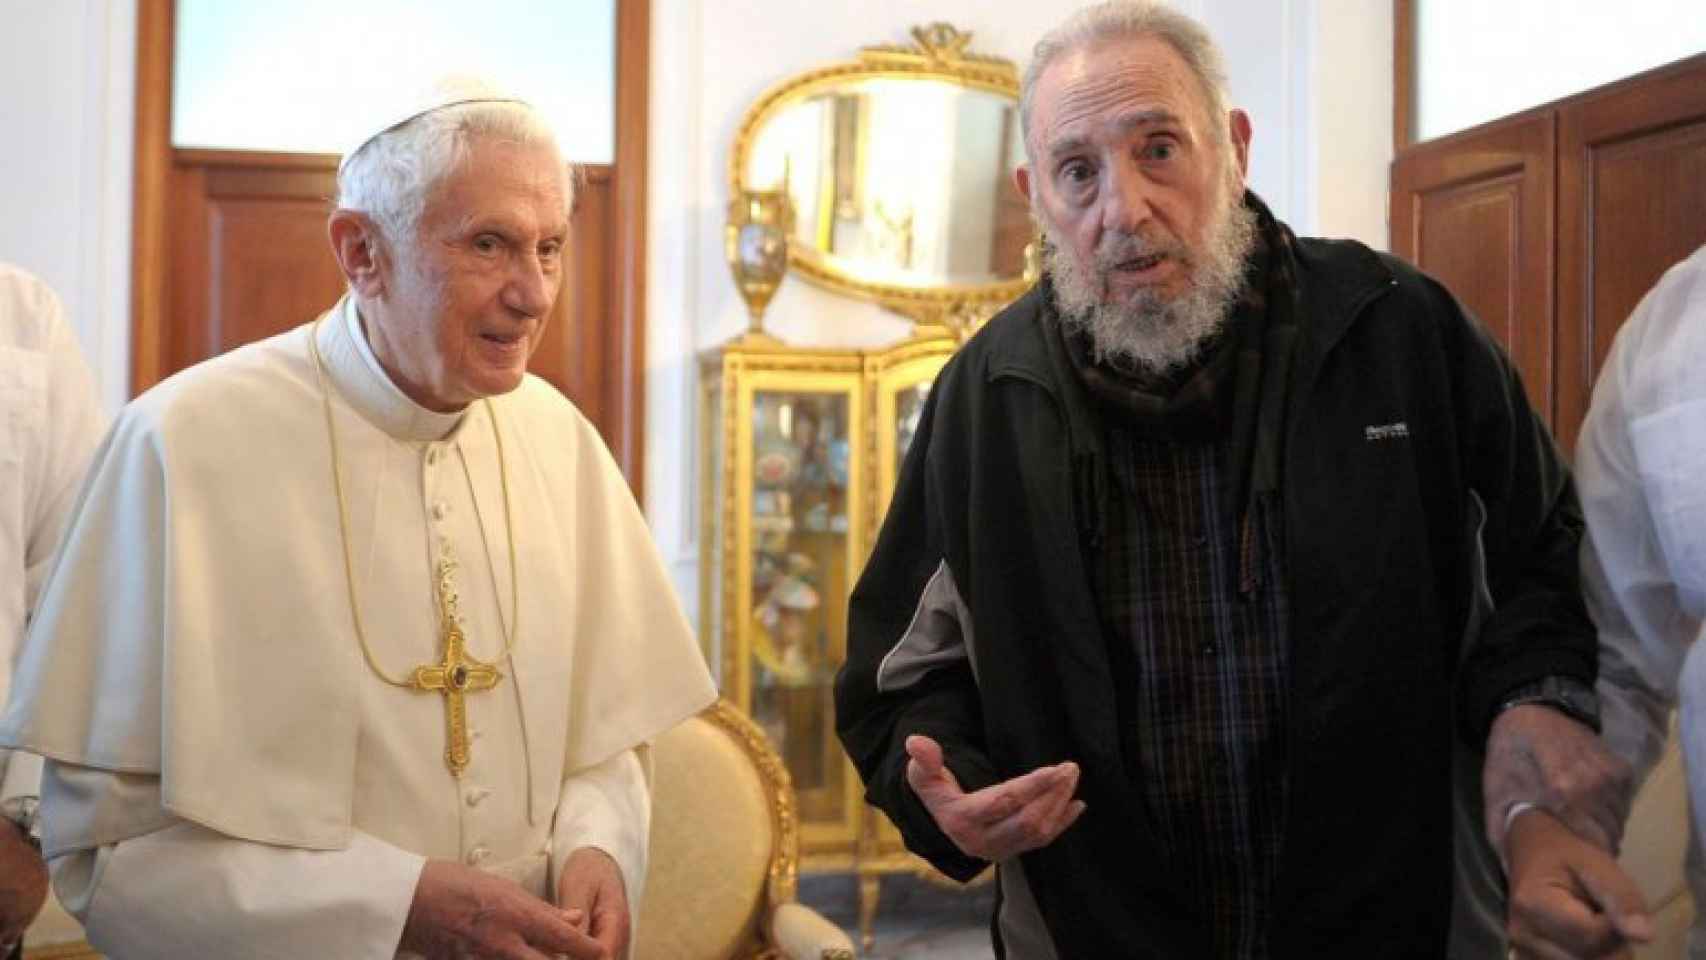 Fidel acudió a la recepción con el Papa Benedicto XVI en chándal